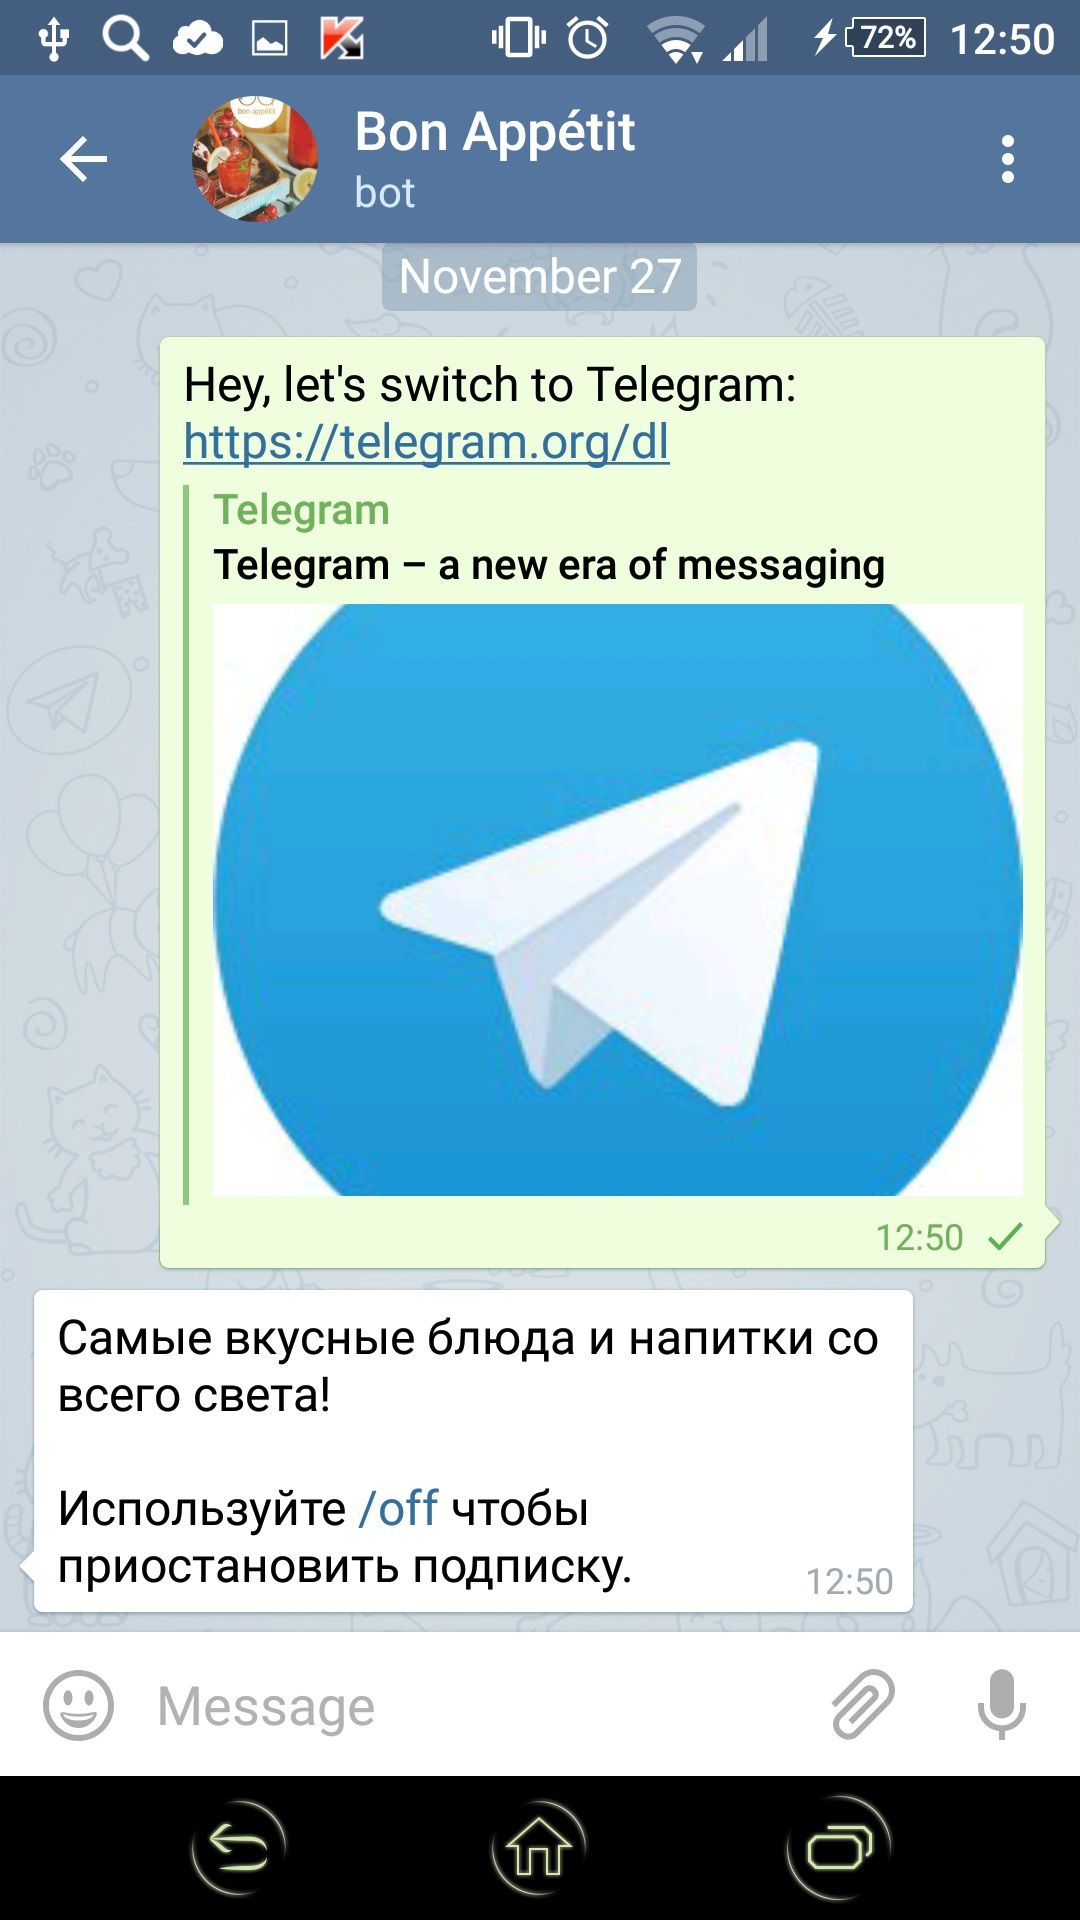 Приложение телеграмм скачать на телефон бесплатно русском языке как фото 71